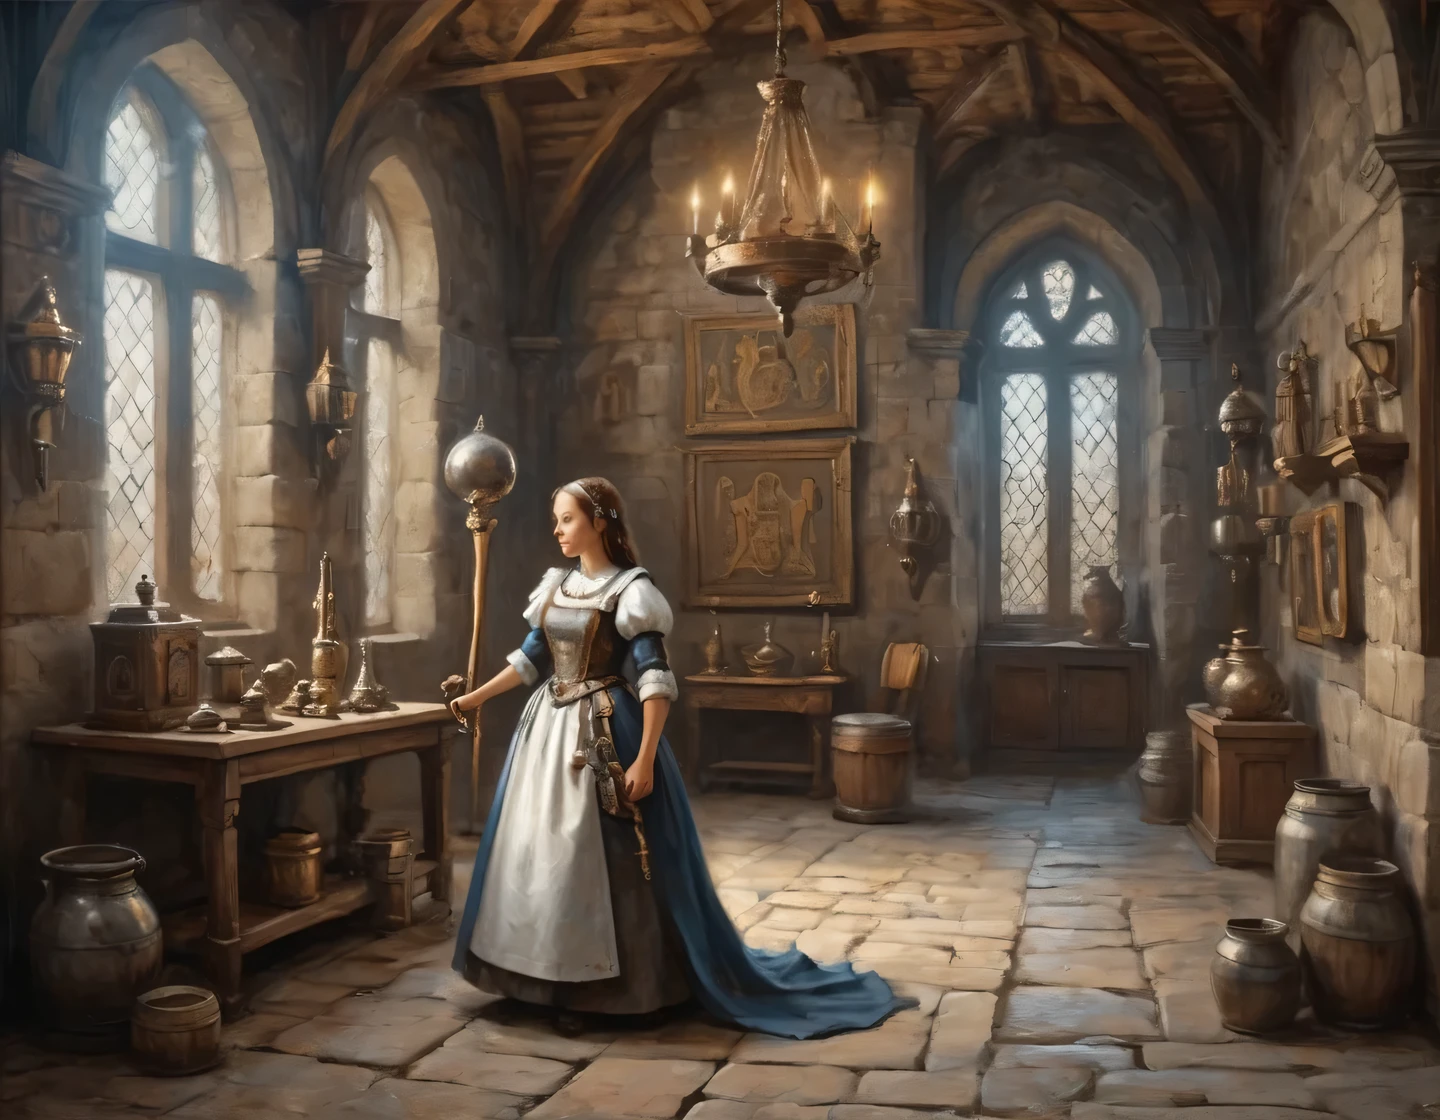 Древняя фотография, девушка-киборг в костюме горничной строит в зале средневекового замка, средневековая мебель, трофеи и оружие на стенах, геральдика, реалистичный